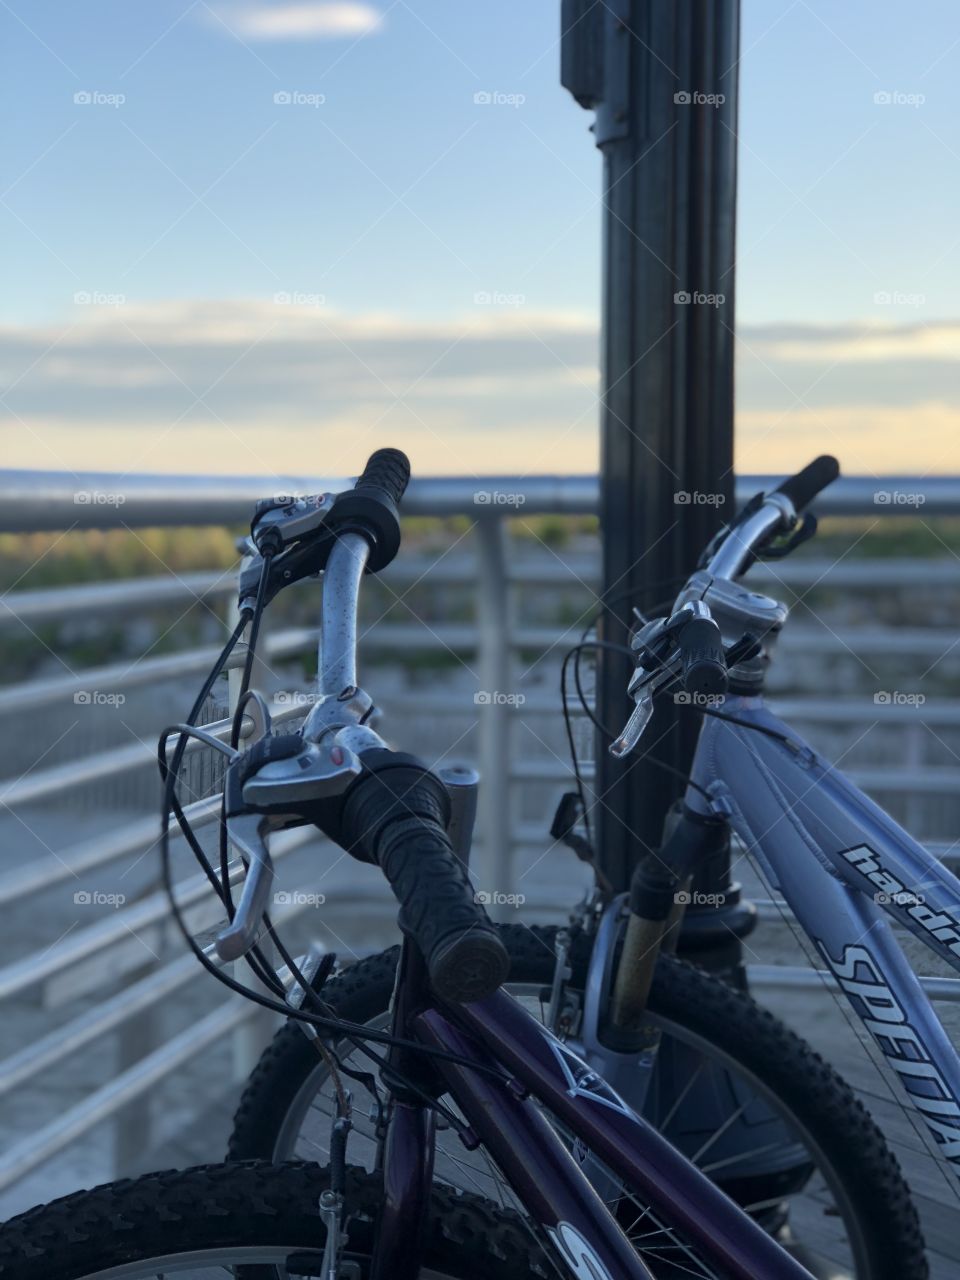 Mountain bikes on Long Beach Boardwalk.